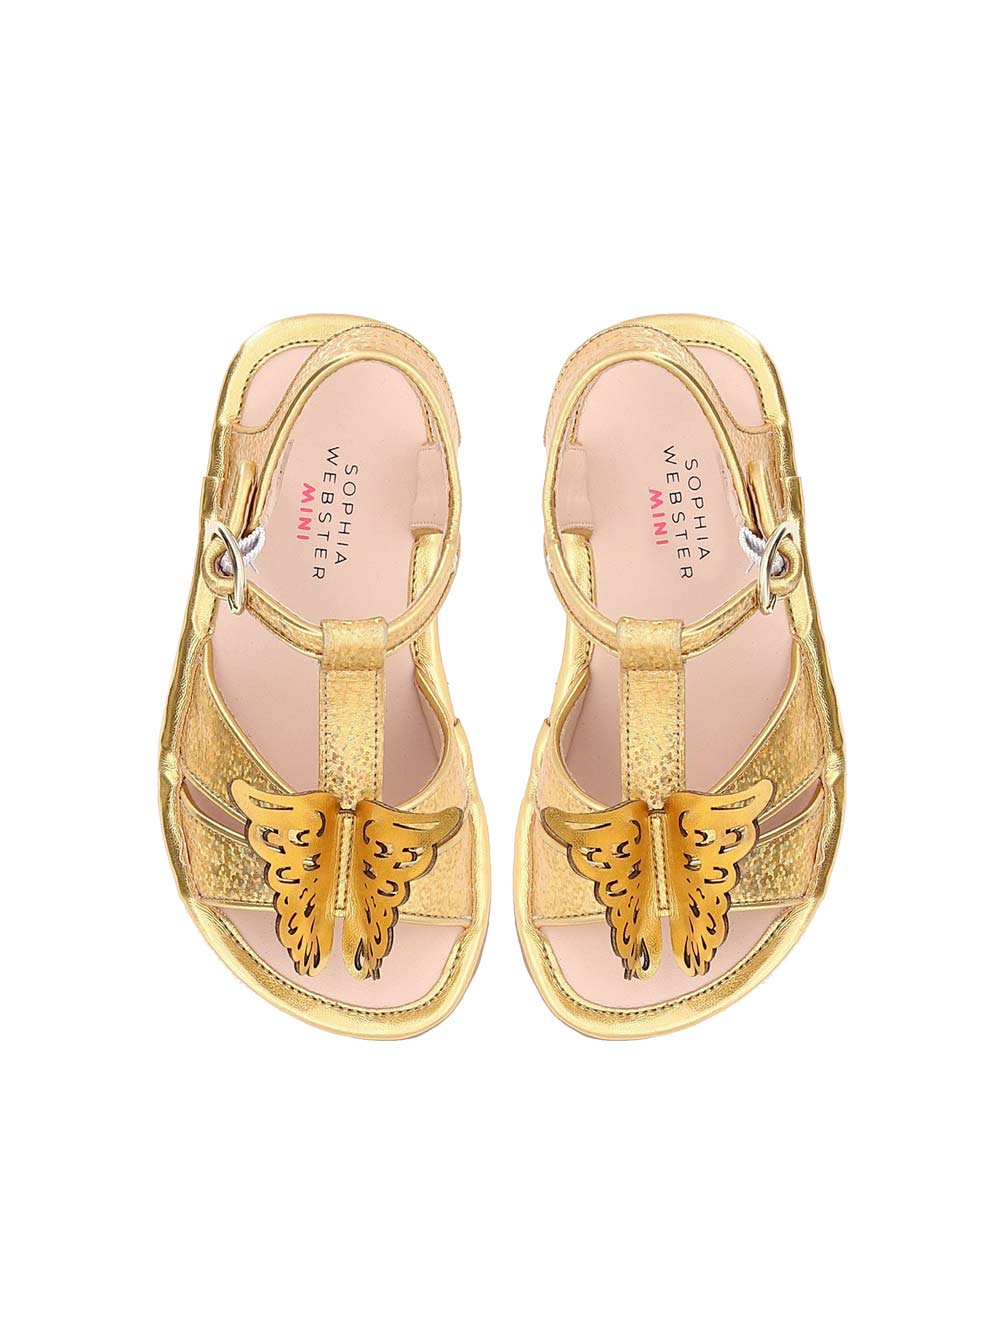 Celeste Gold Sandals